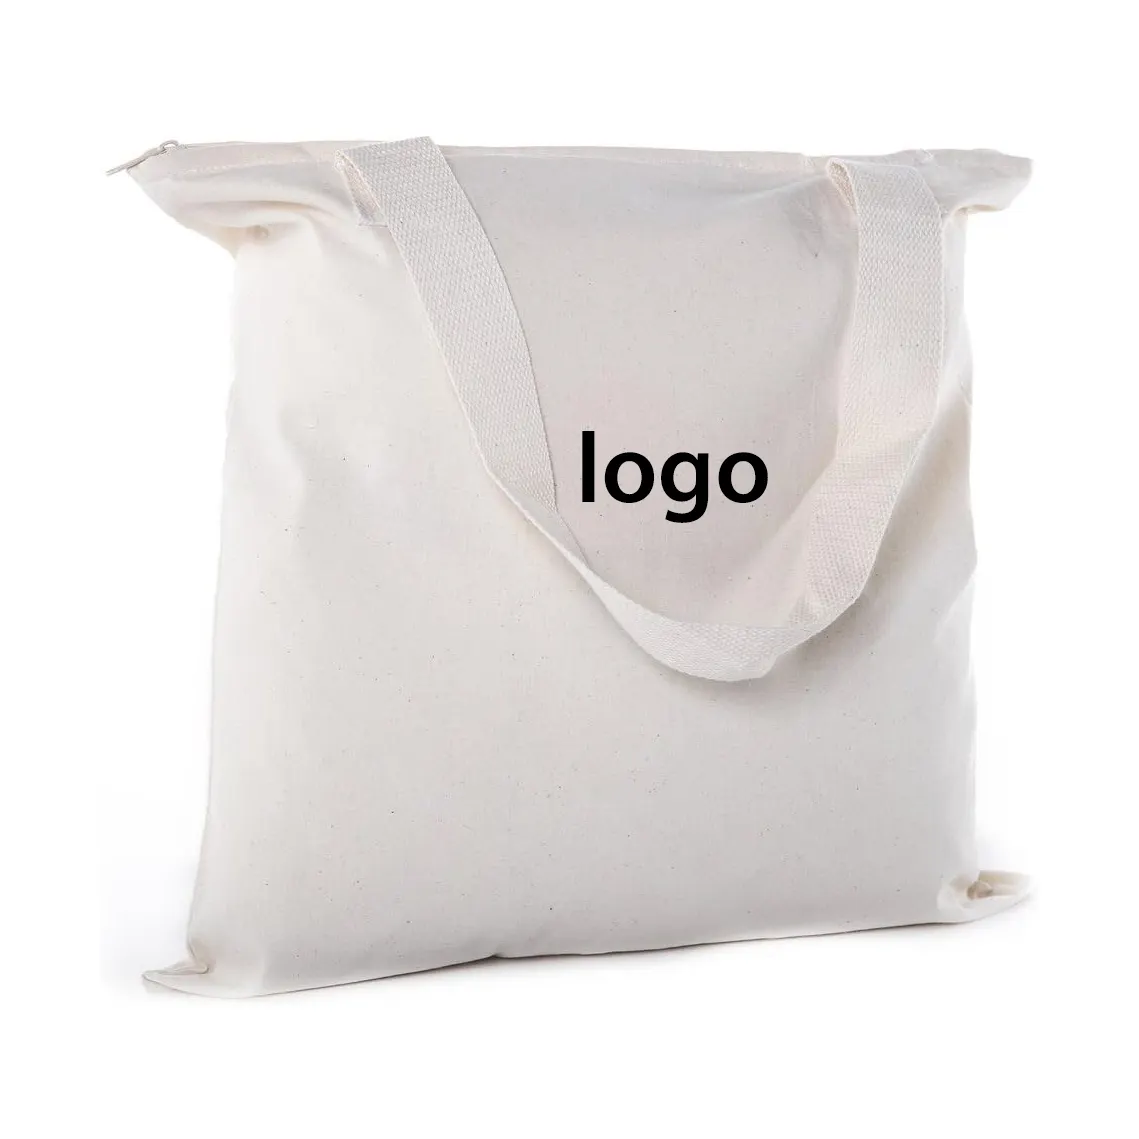 安い工芸品プロモーションショッピング誕生日リサイクル可能な白いプレーントートバッグジッパー付きコットンキャンバスインナーバッグ付き